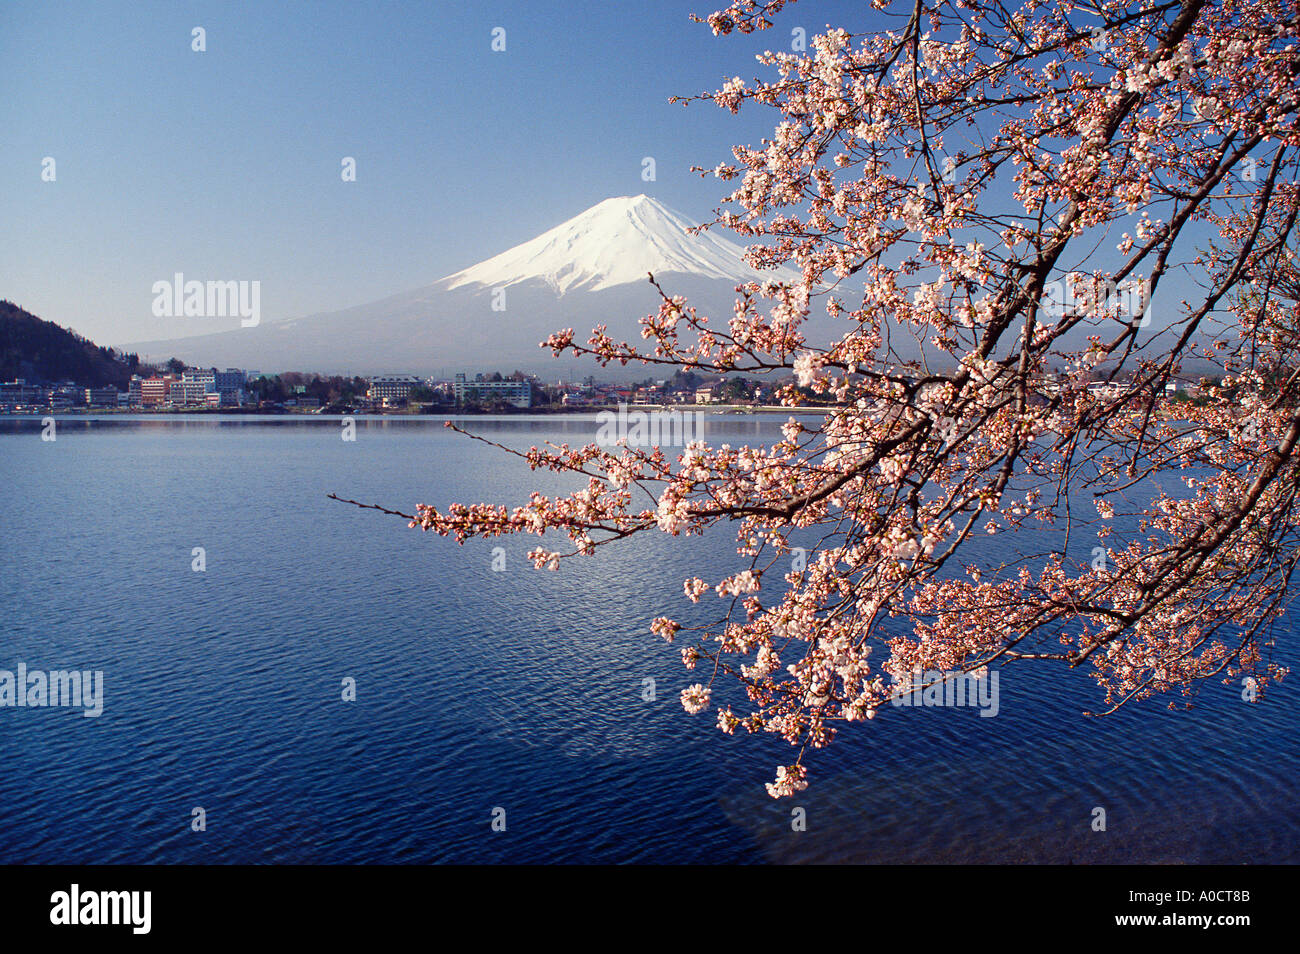 Mt Fuji spring cherry blossoms and Lake Kawaguchi with the resort of Kawaguchi on the far shore Japan Stock Photo